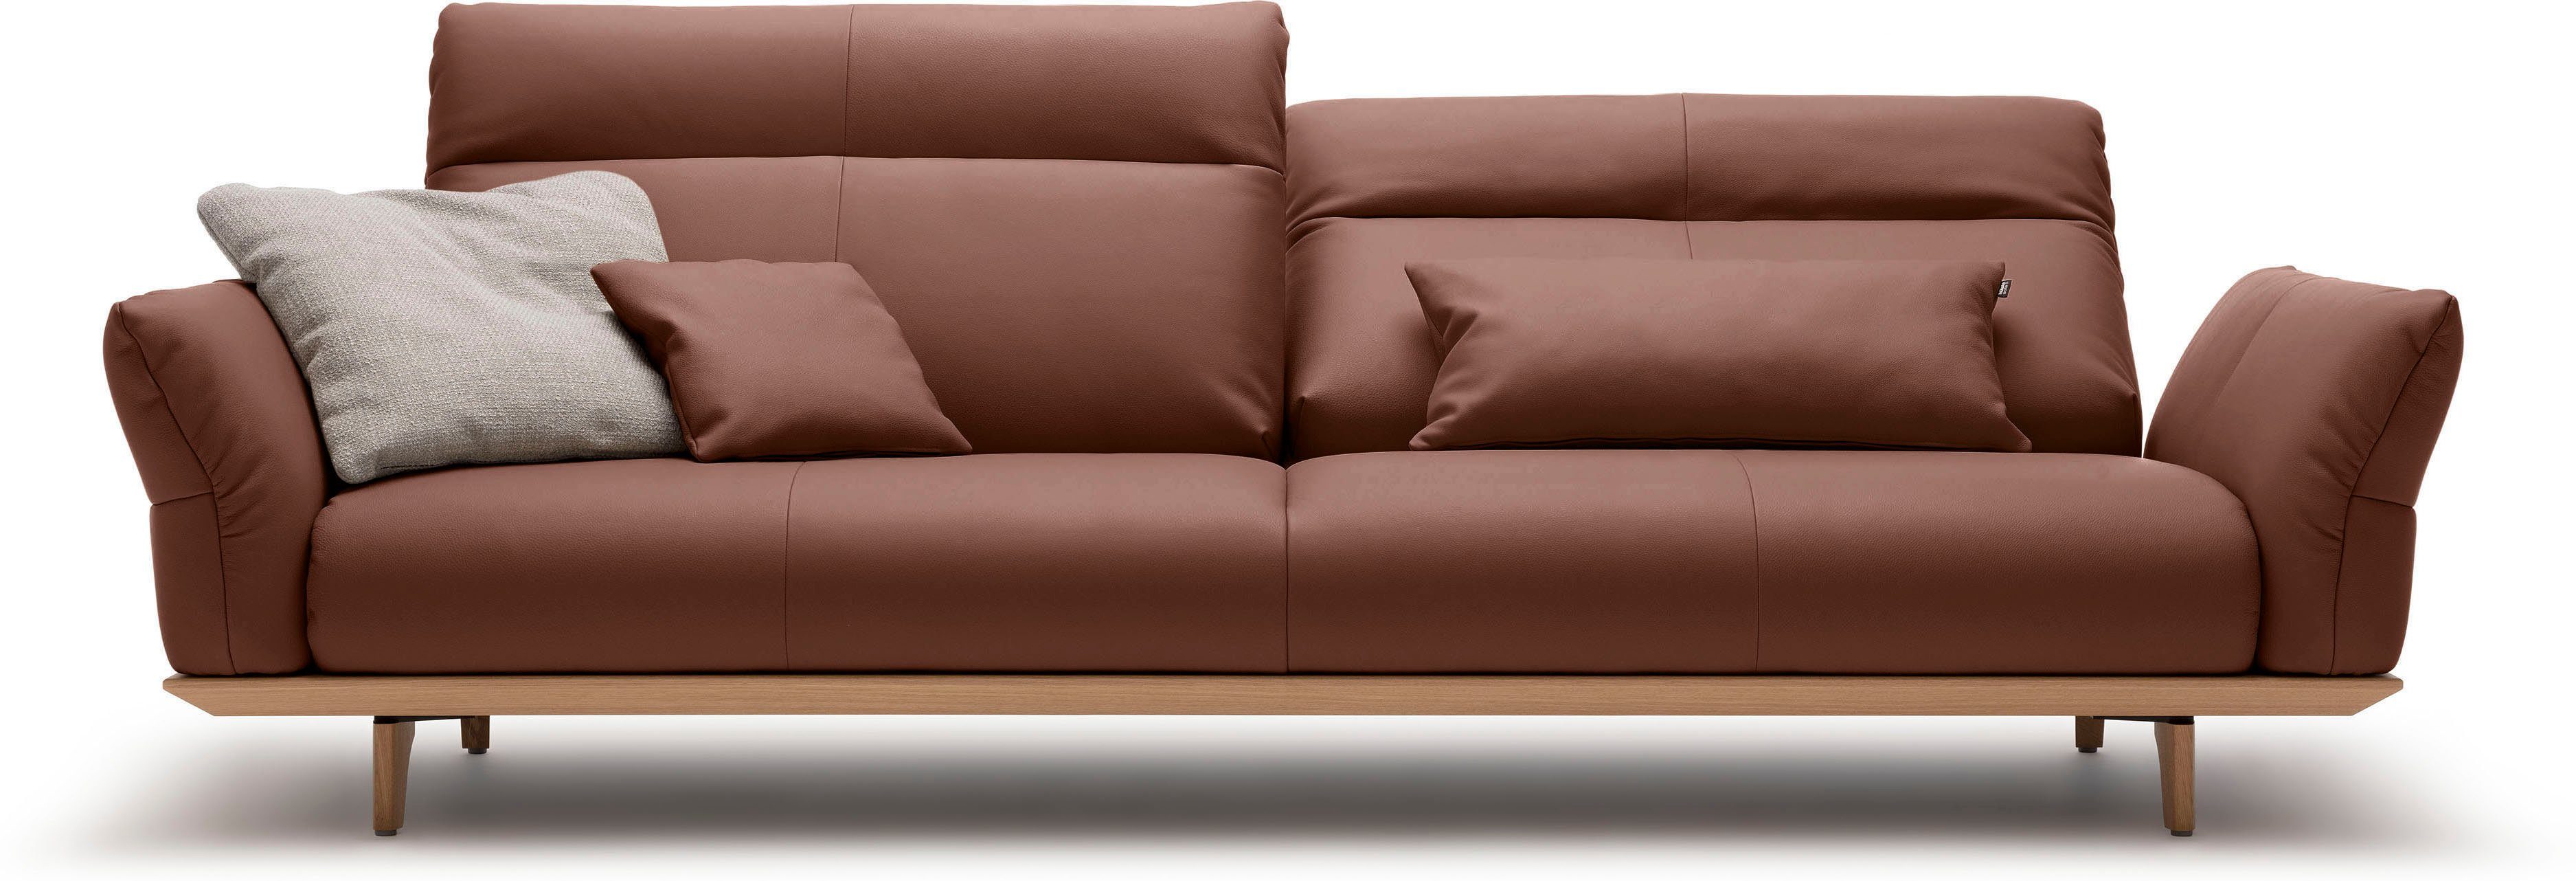 hülsta sofa 4-Sitzer hs.460, Sockel in Eiche, Füße Eiche natur, Breite 248 cm | Einzelsofas